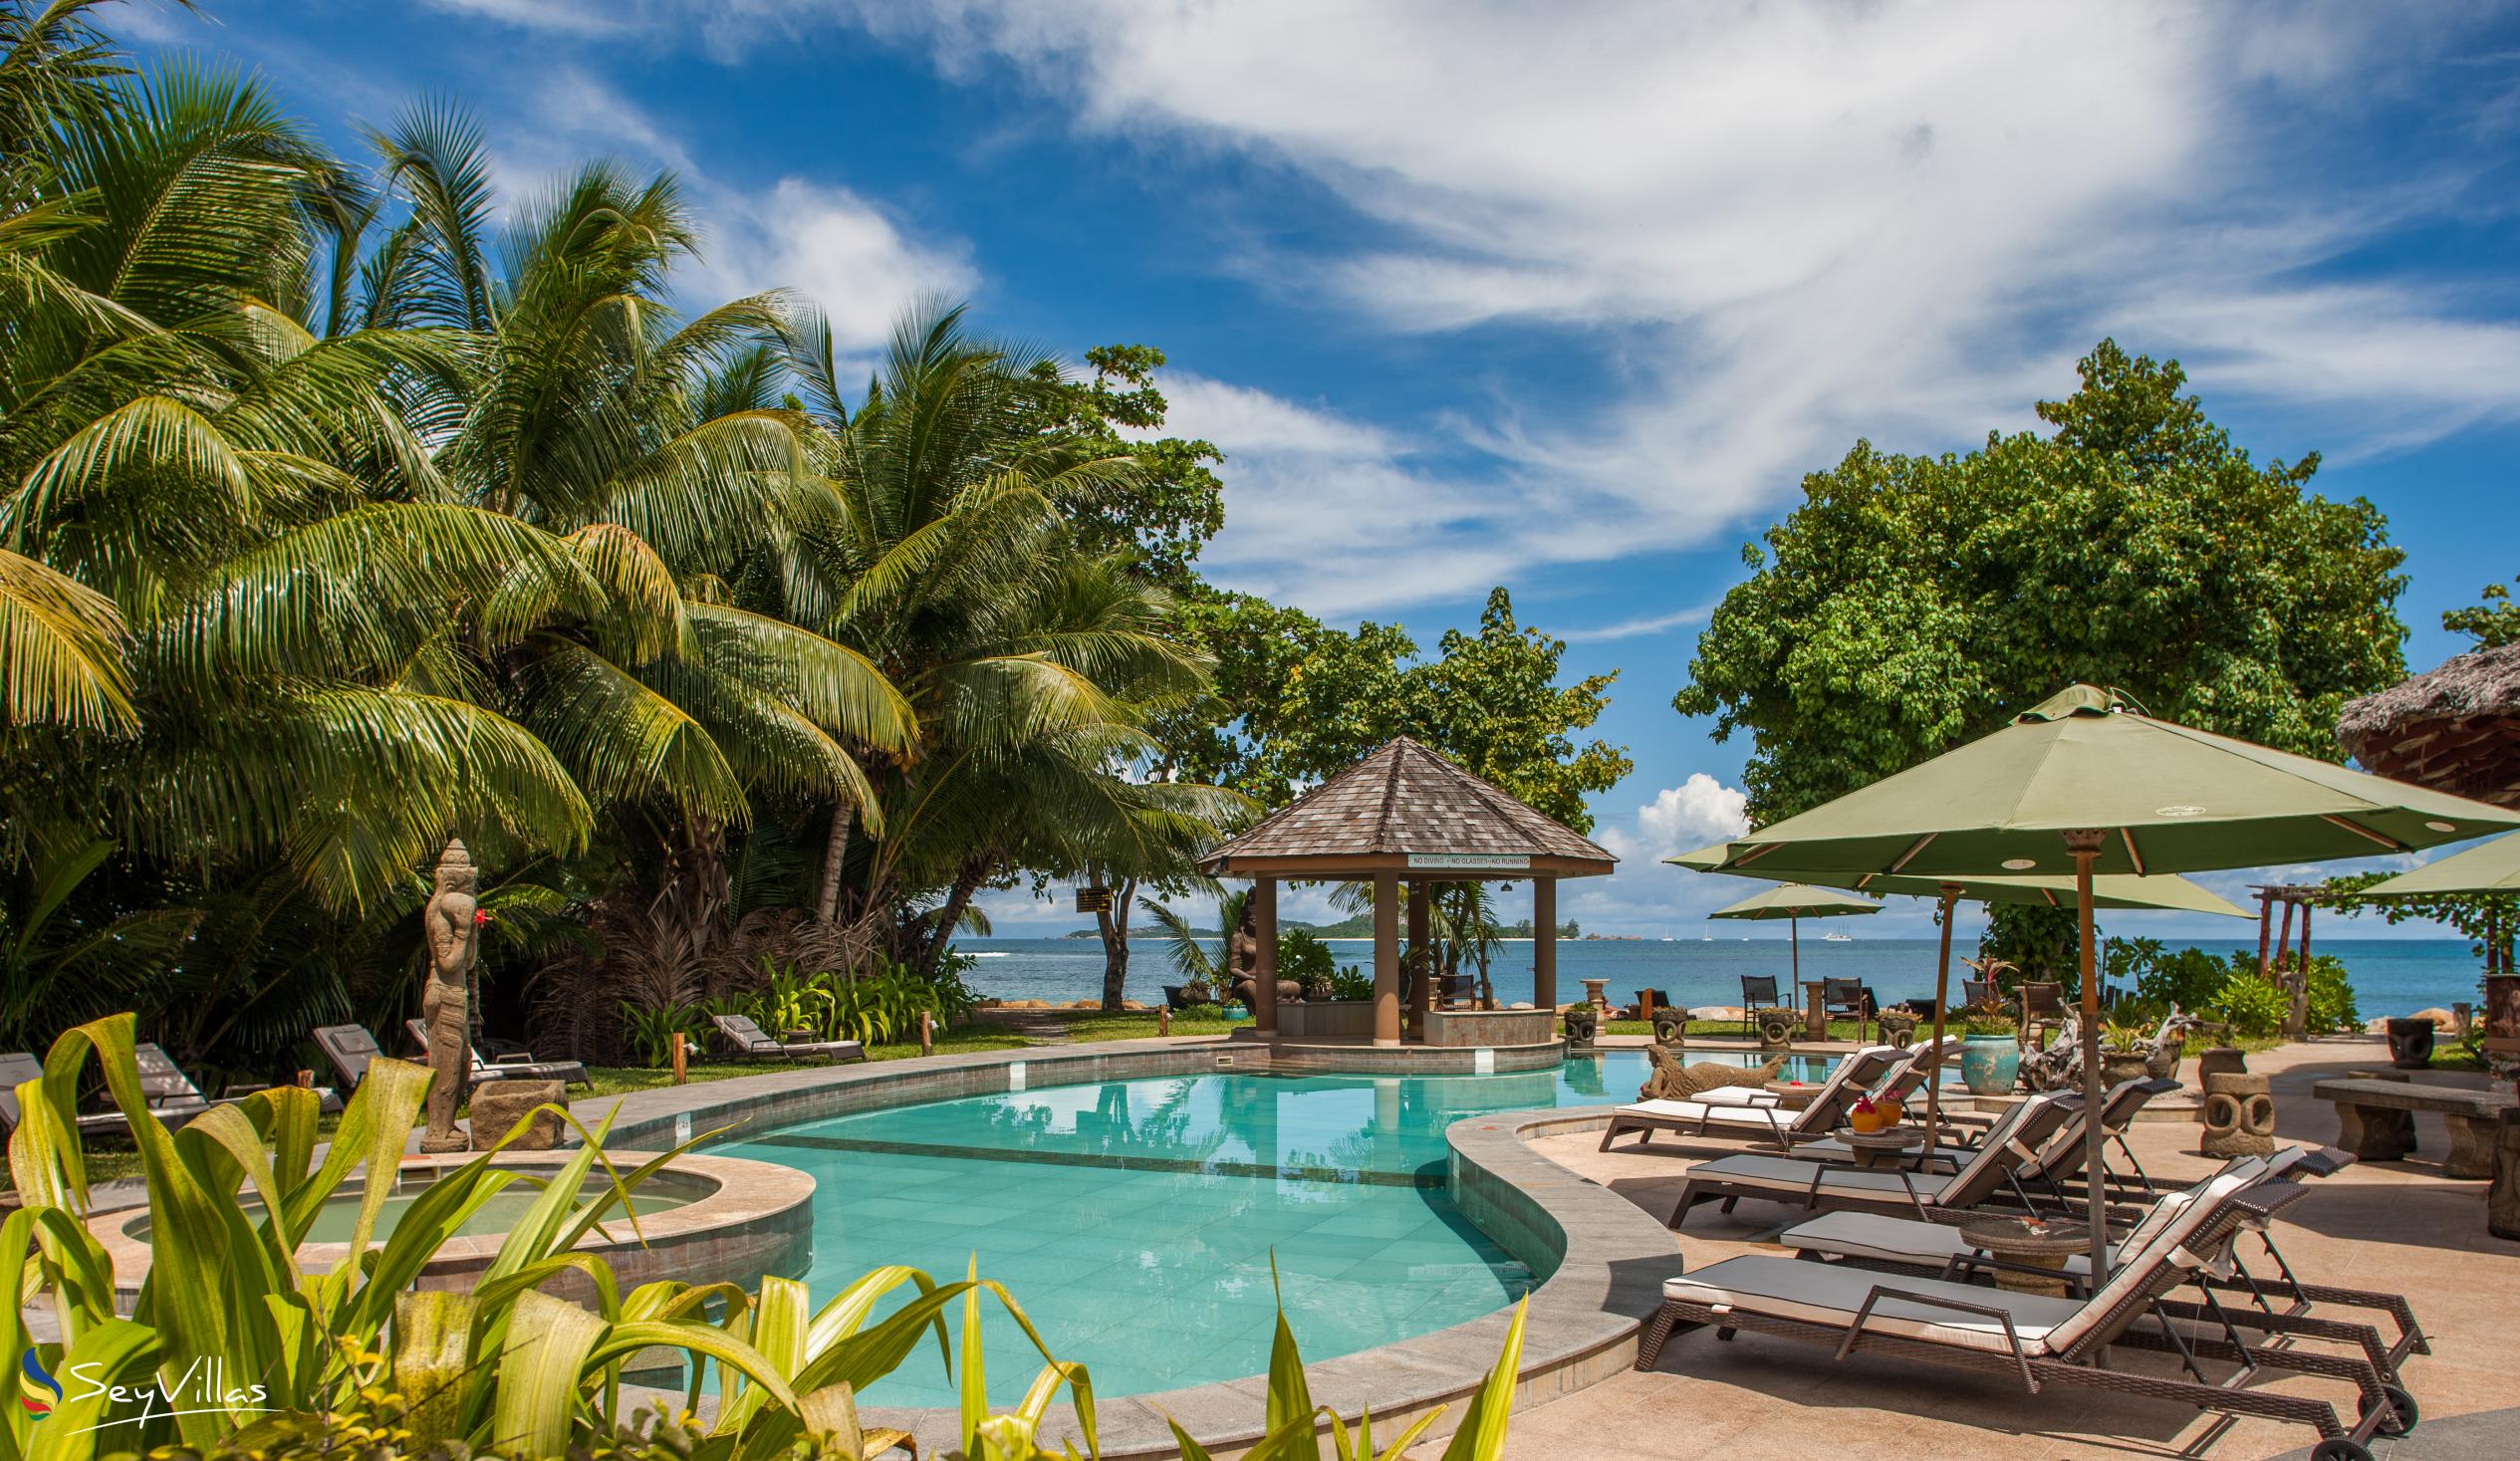 Foto 5: Castello Beach Hotel - Aussenbereich - Praslin (Seychellen)